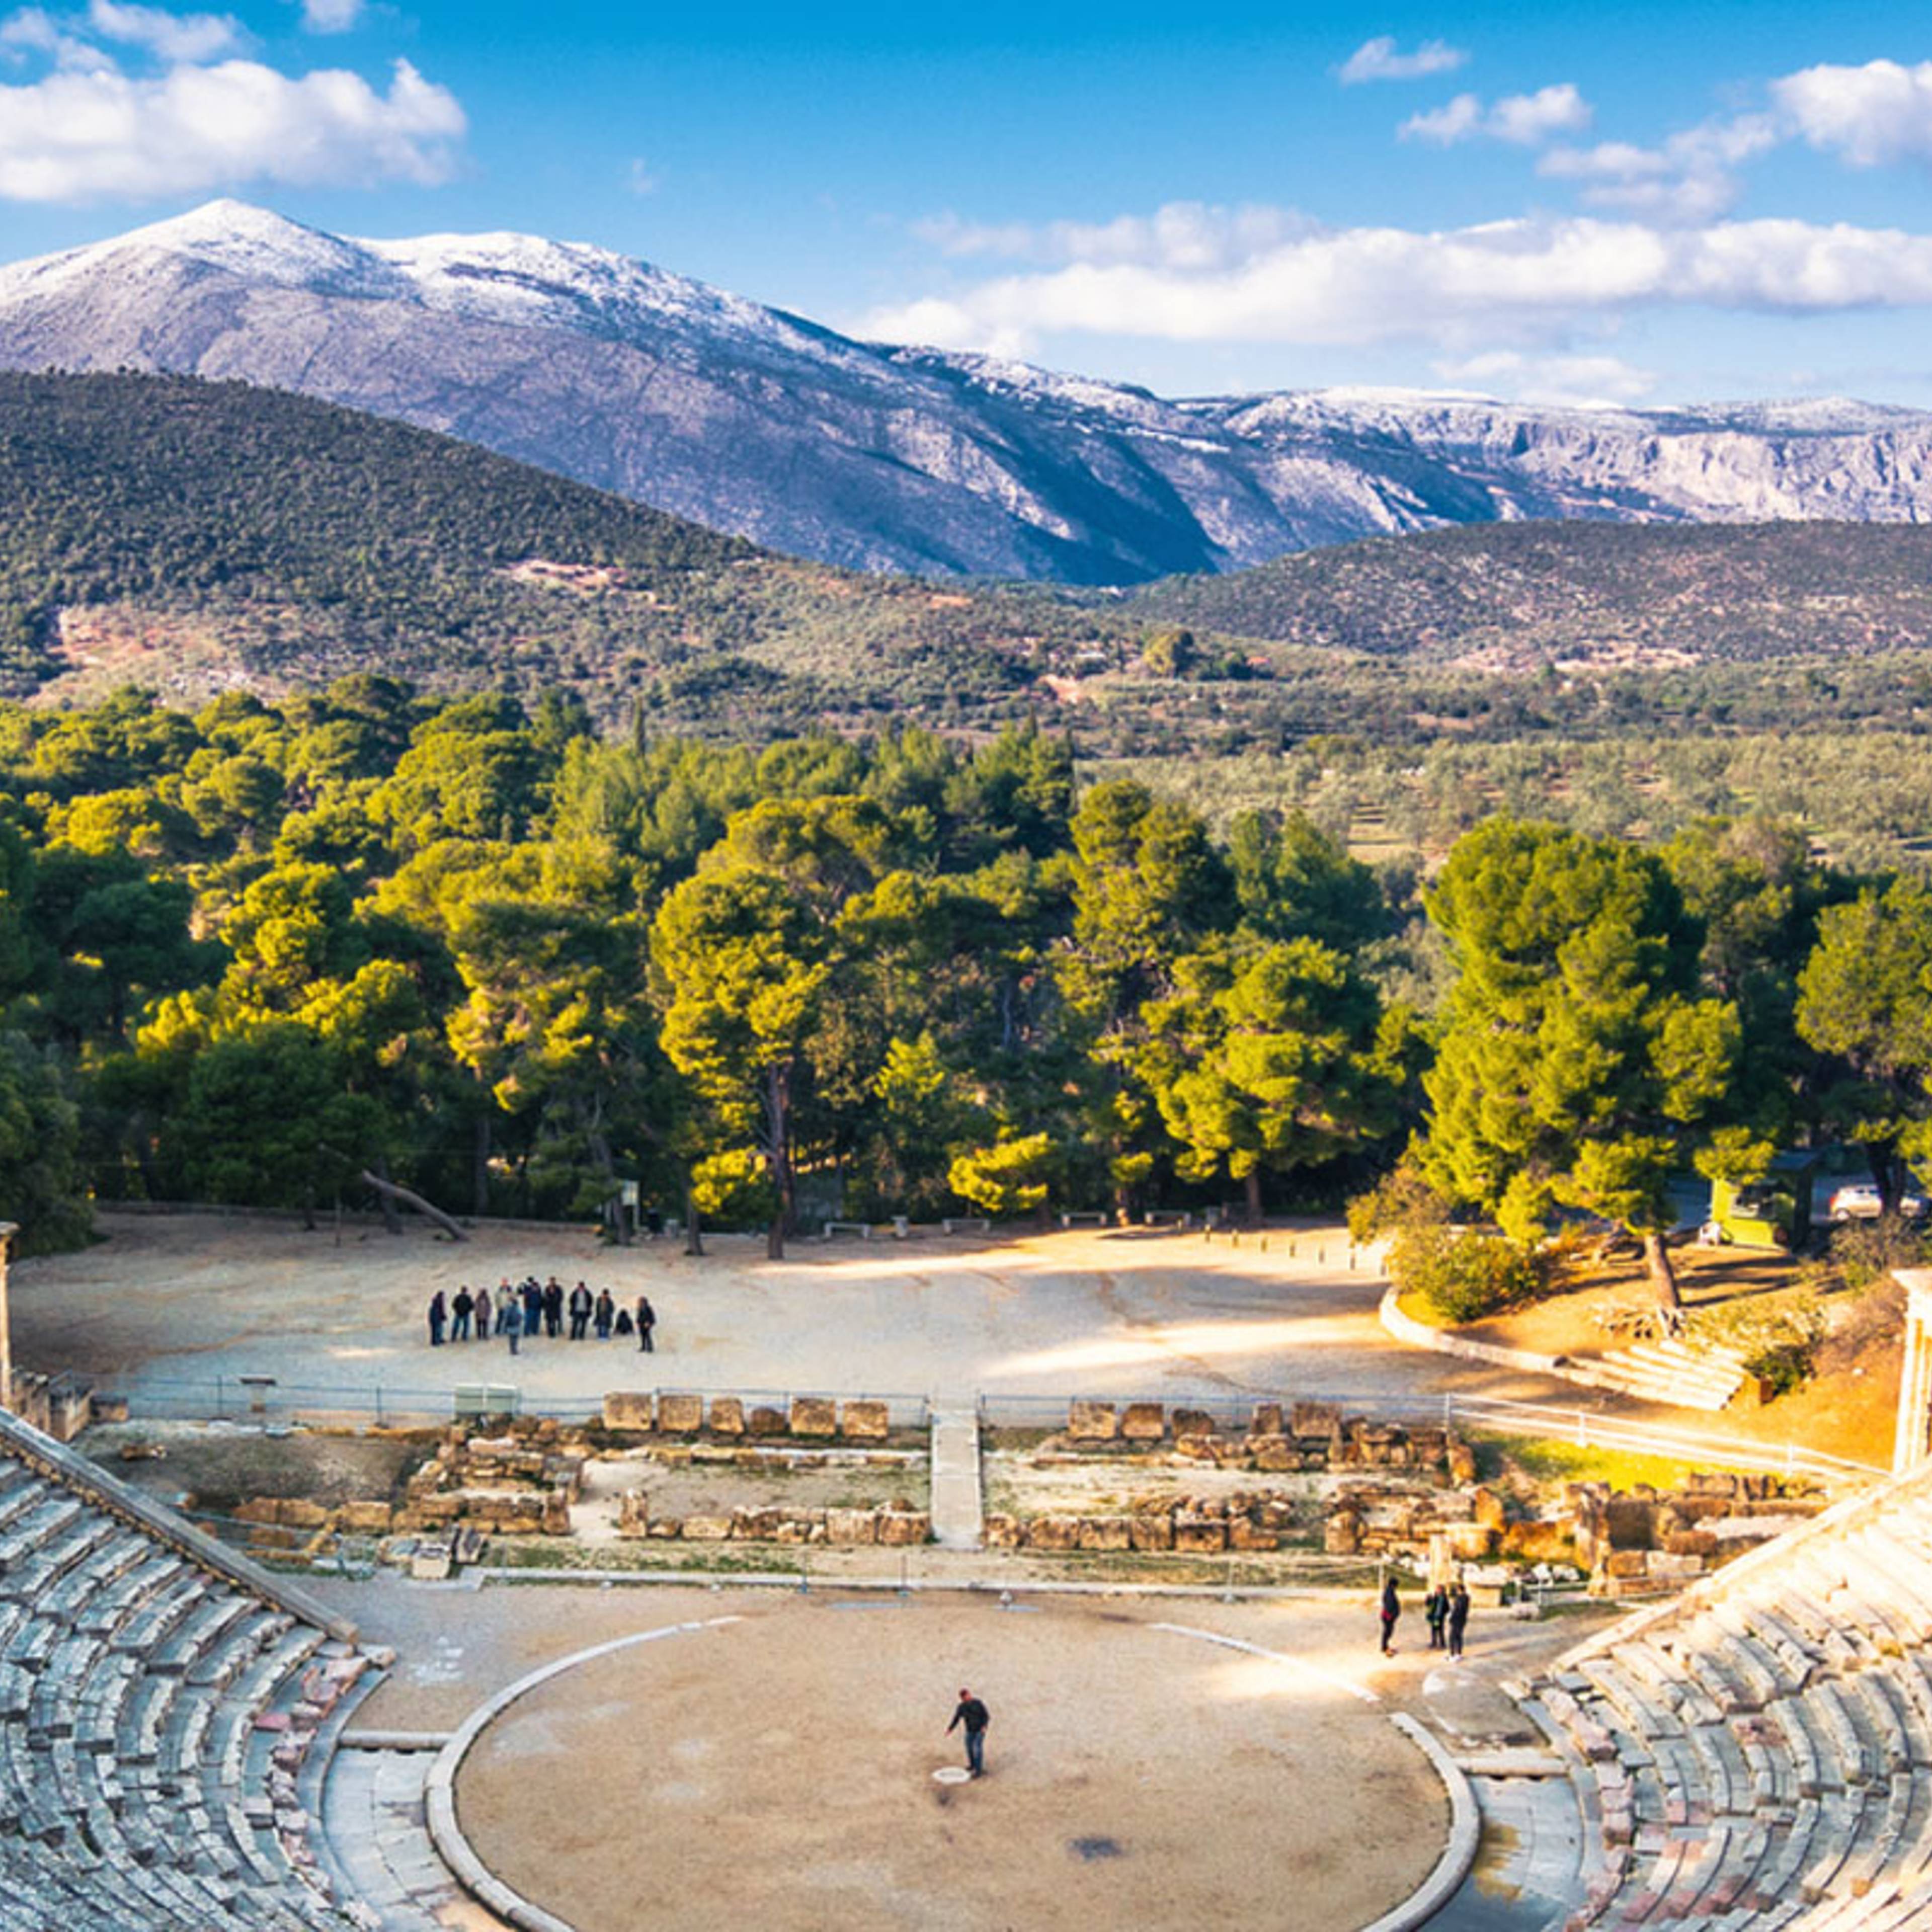 Het oude theater van Epidaurus (of "Epidaurus")